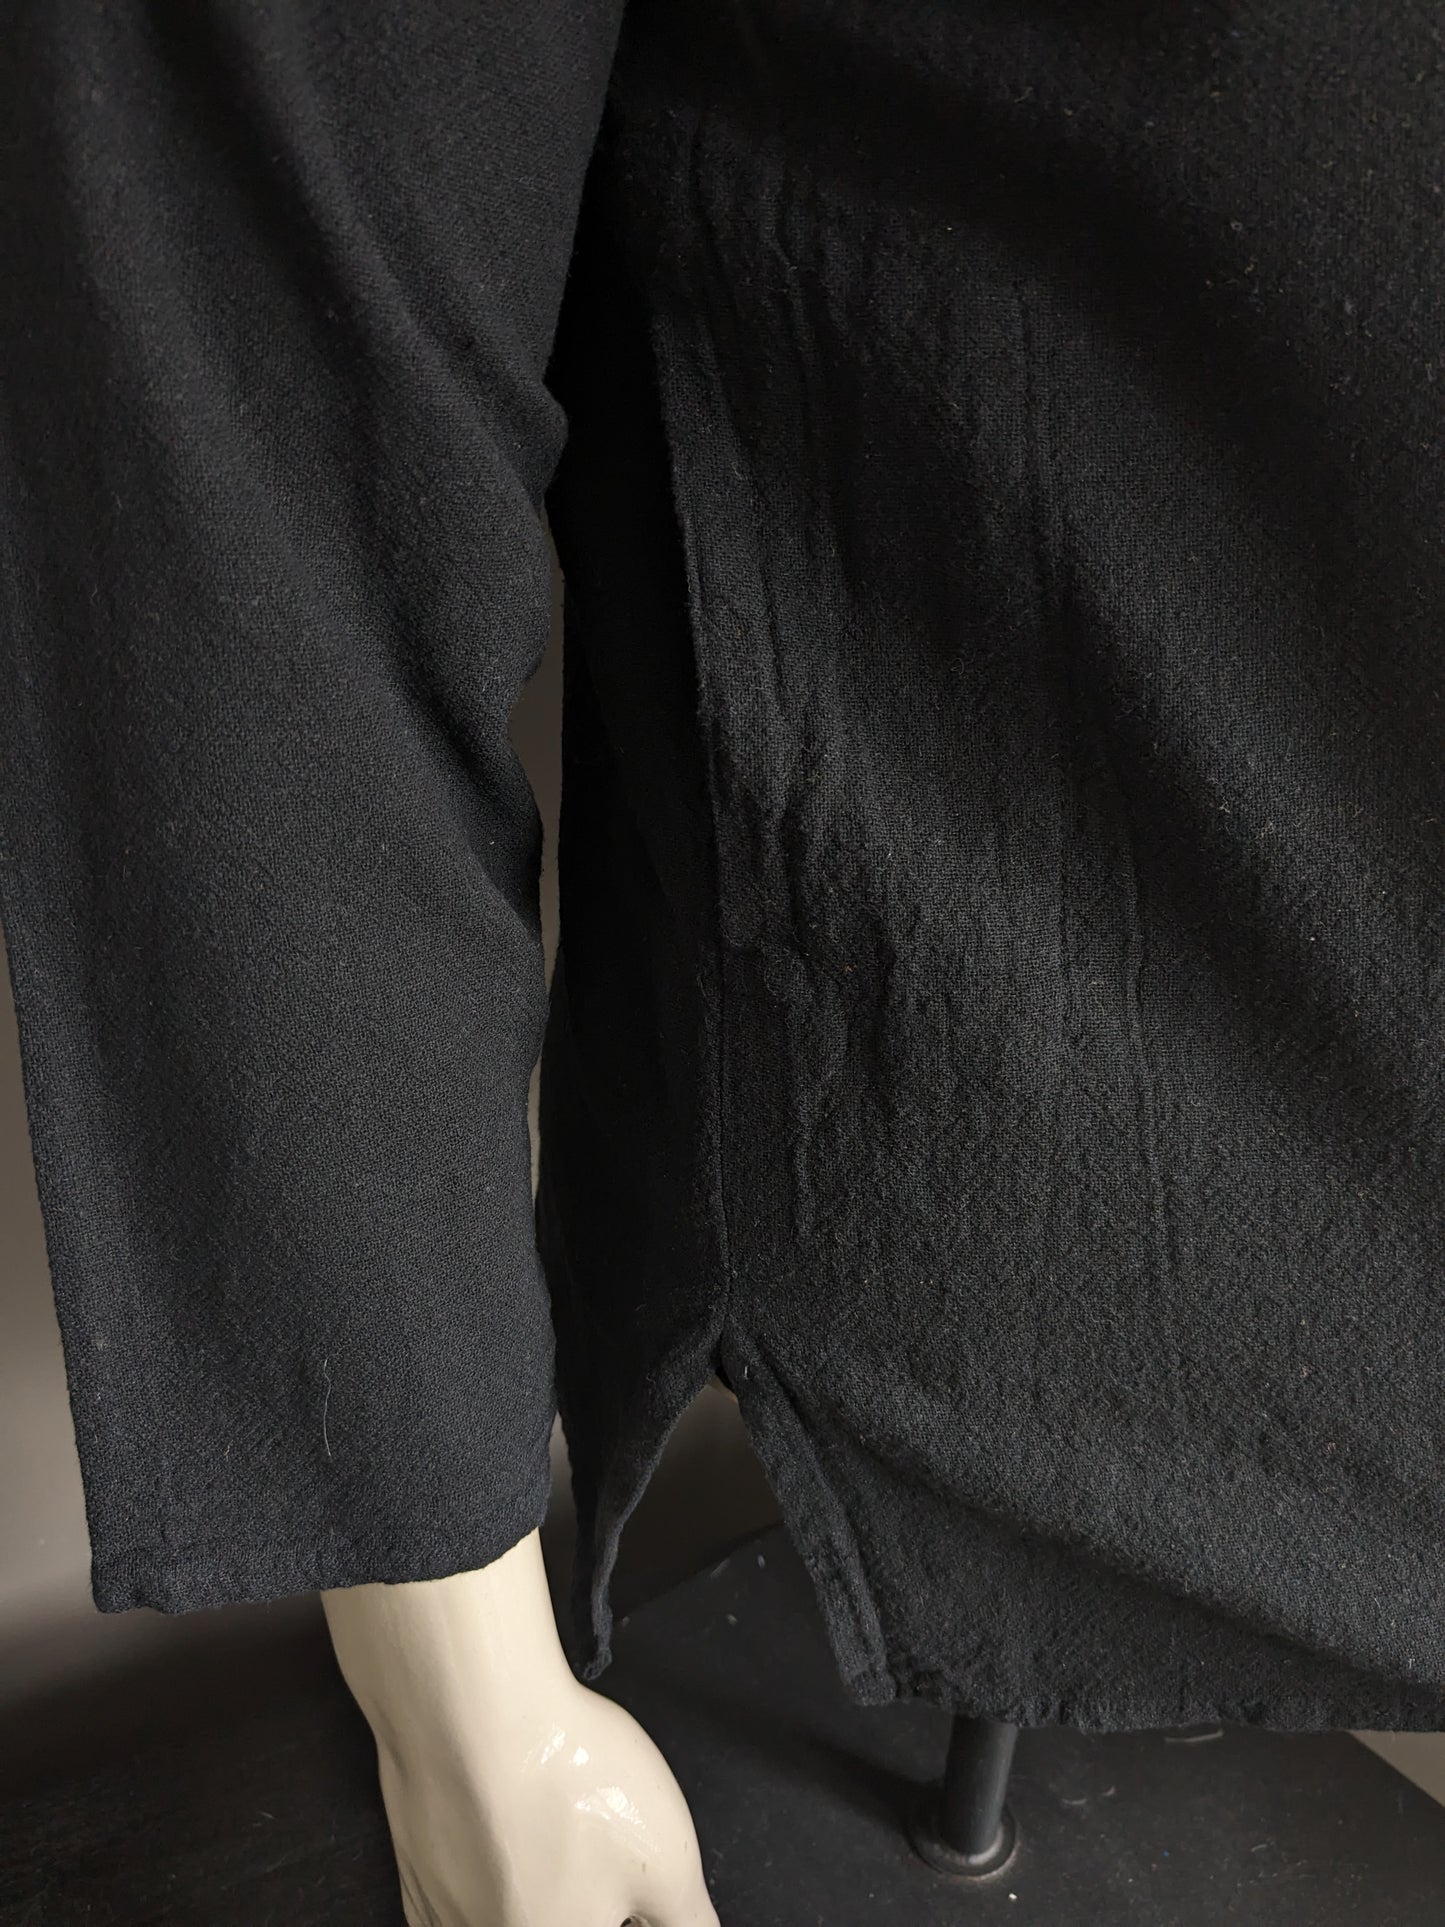 Vintage overhemd shirt met 1 zak en mao / boeren-/ opstaande kraag. Zwart gekleurd. Maat M.